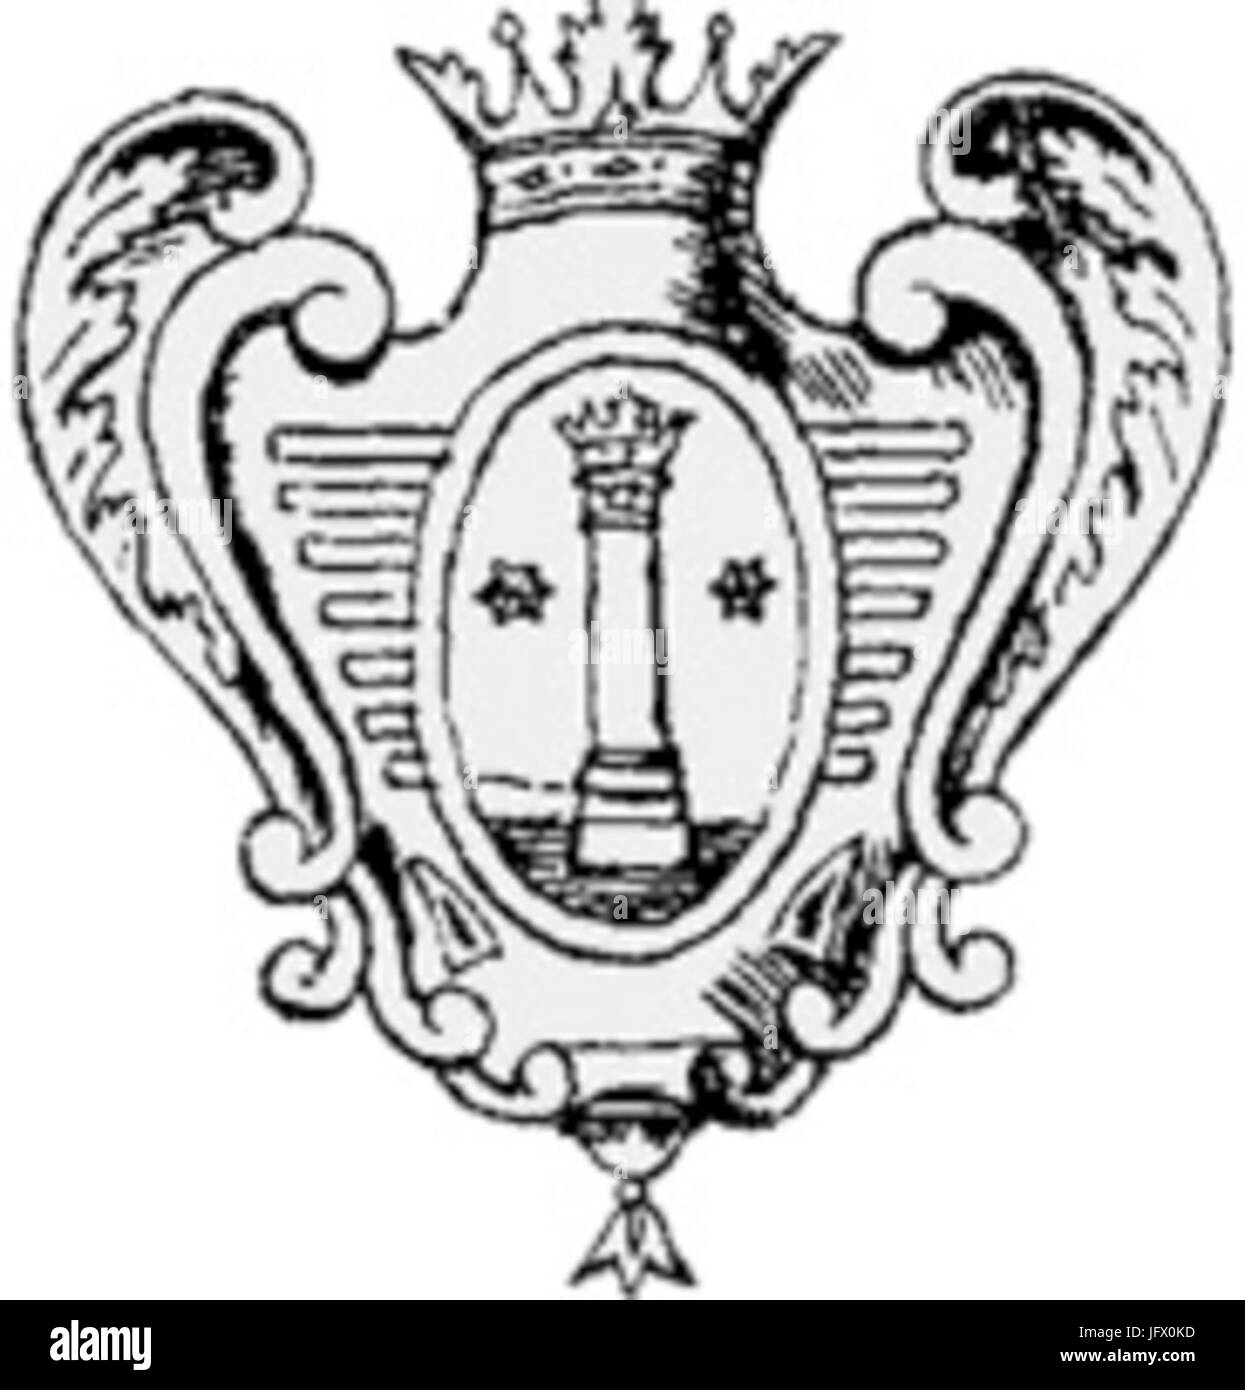 Герб Коломны 1730